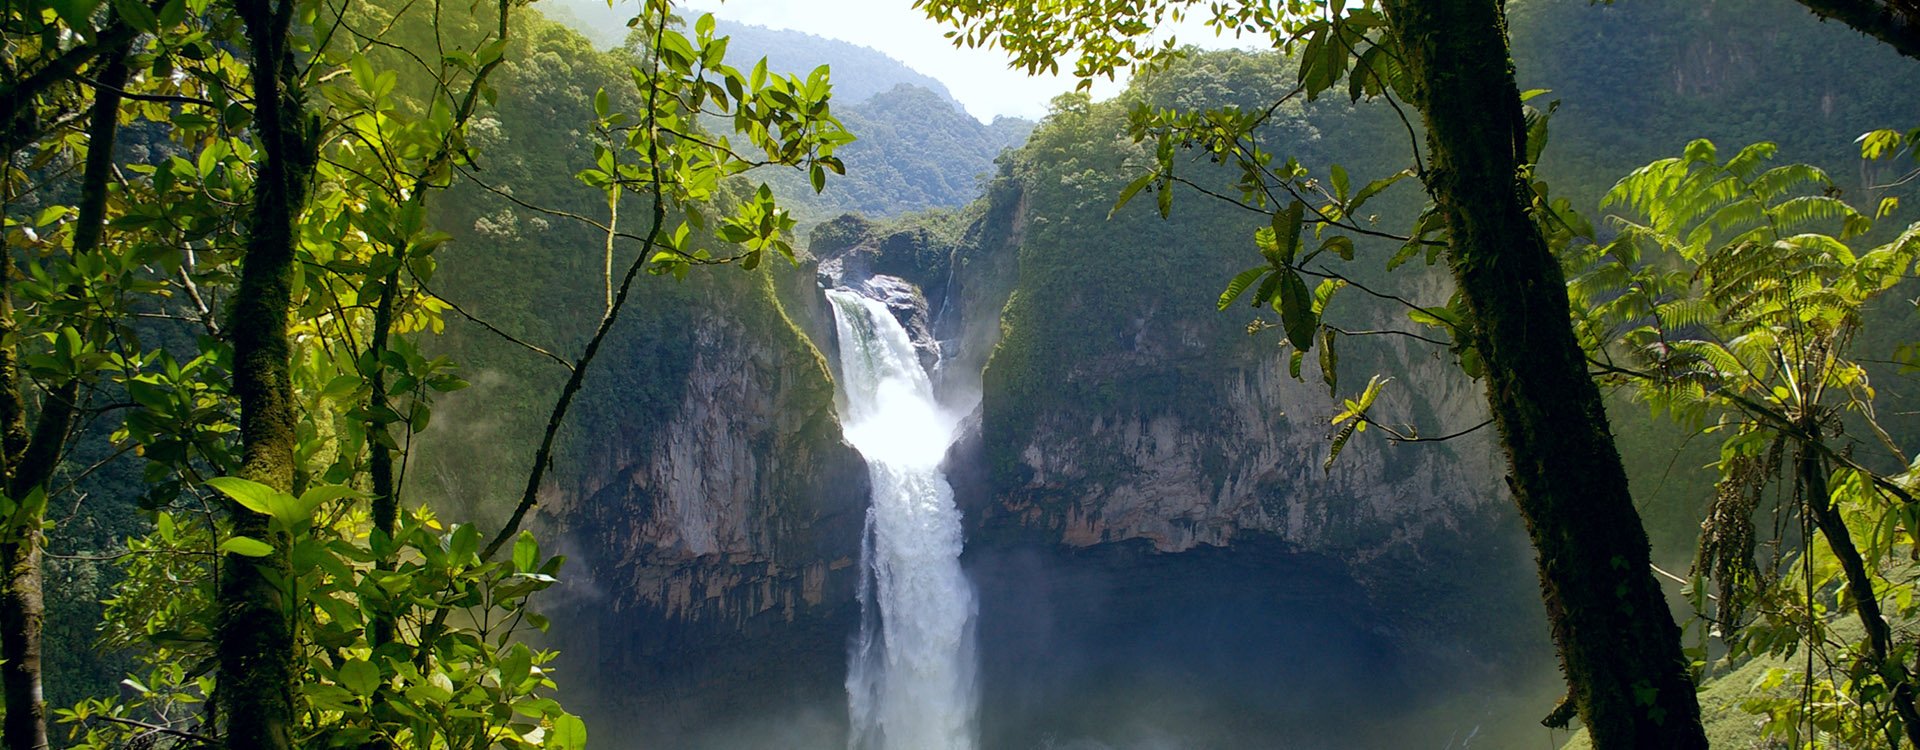 San Rafael Falls. The Largest Waterfall in Ecuador